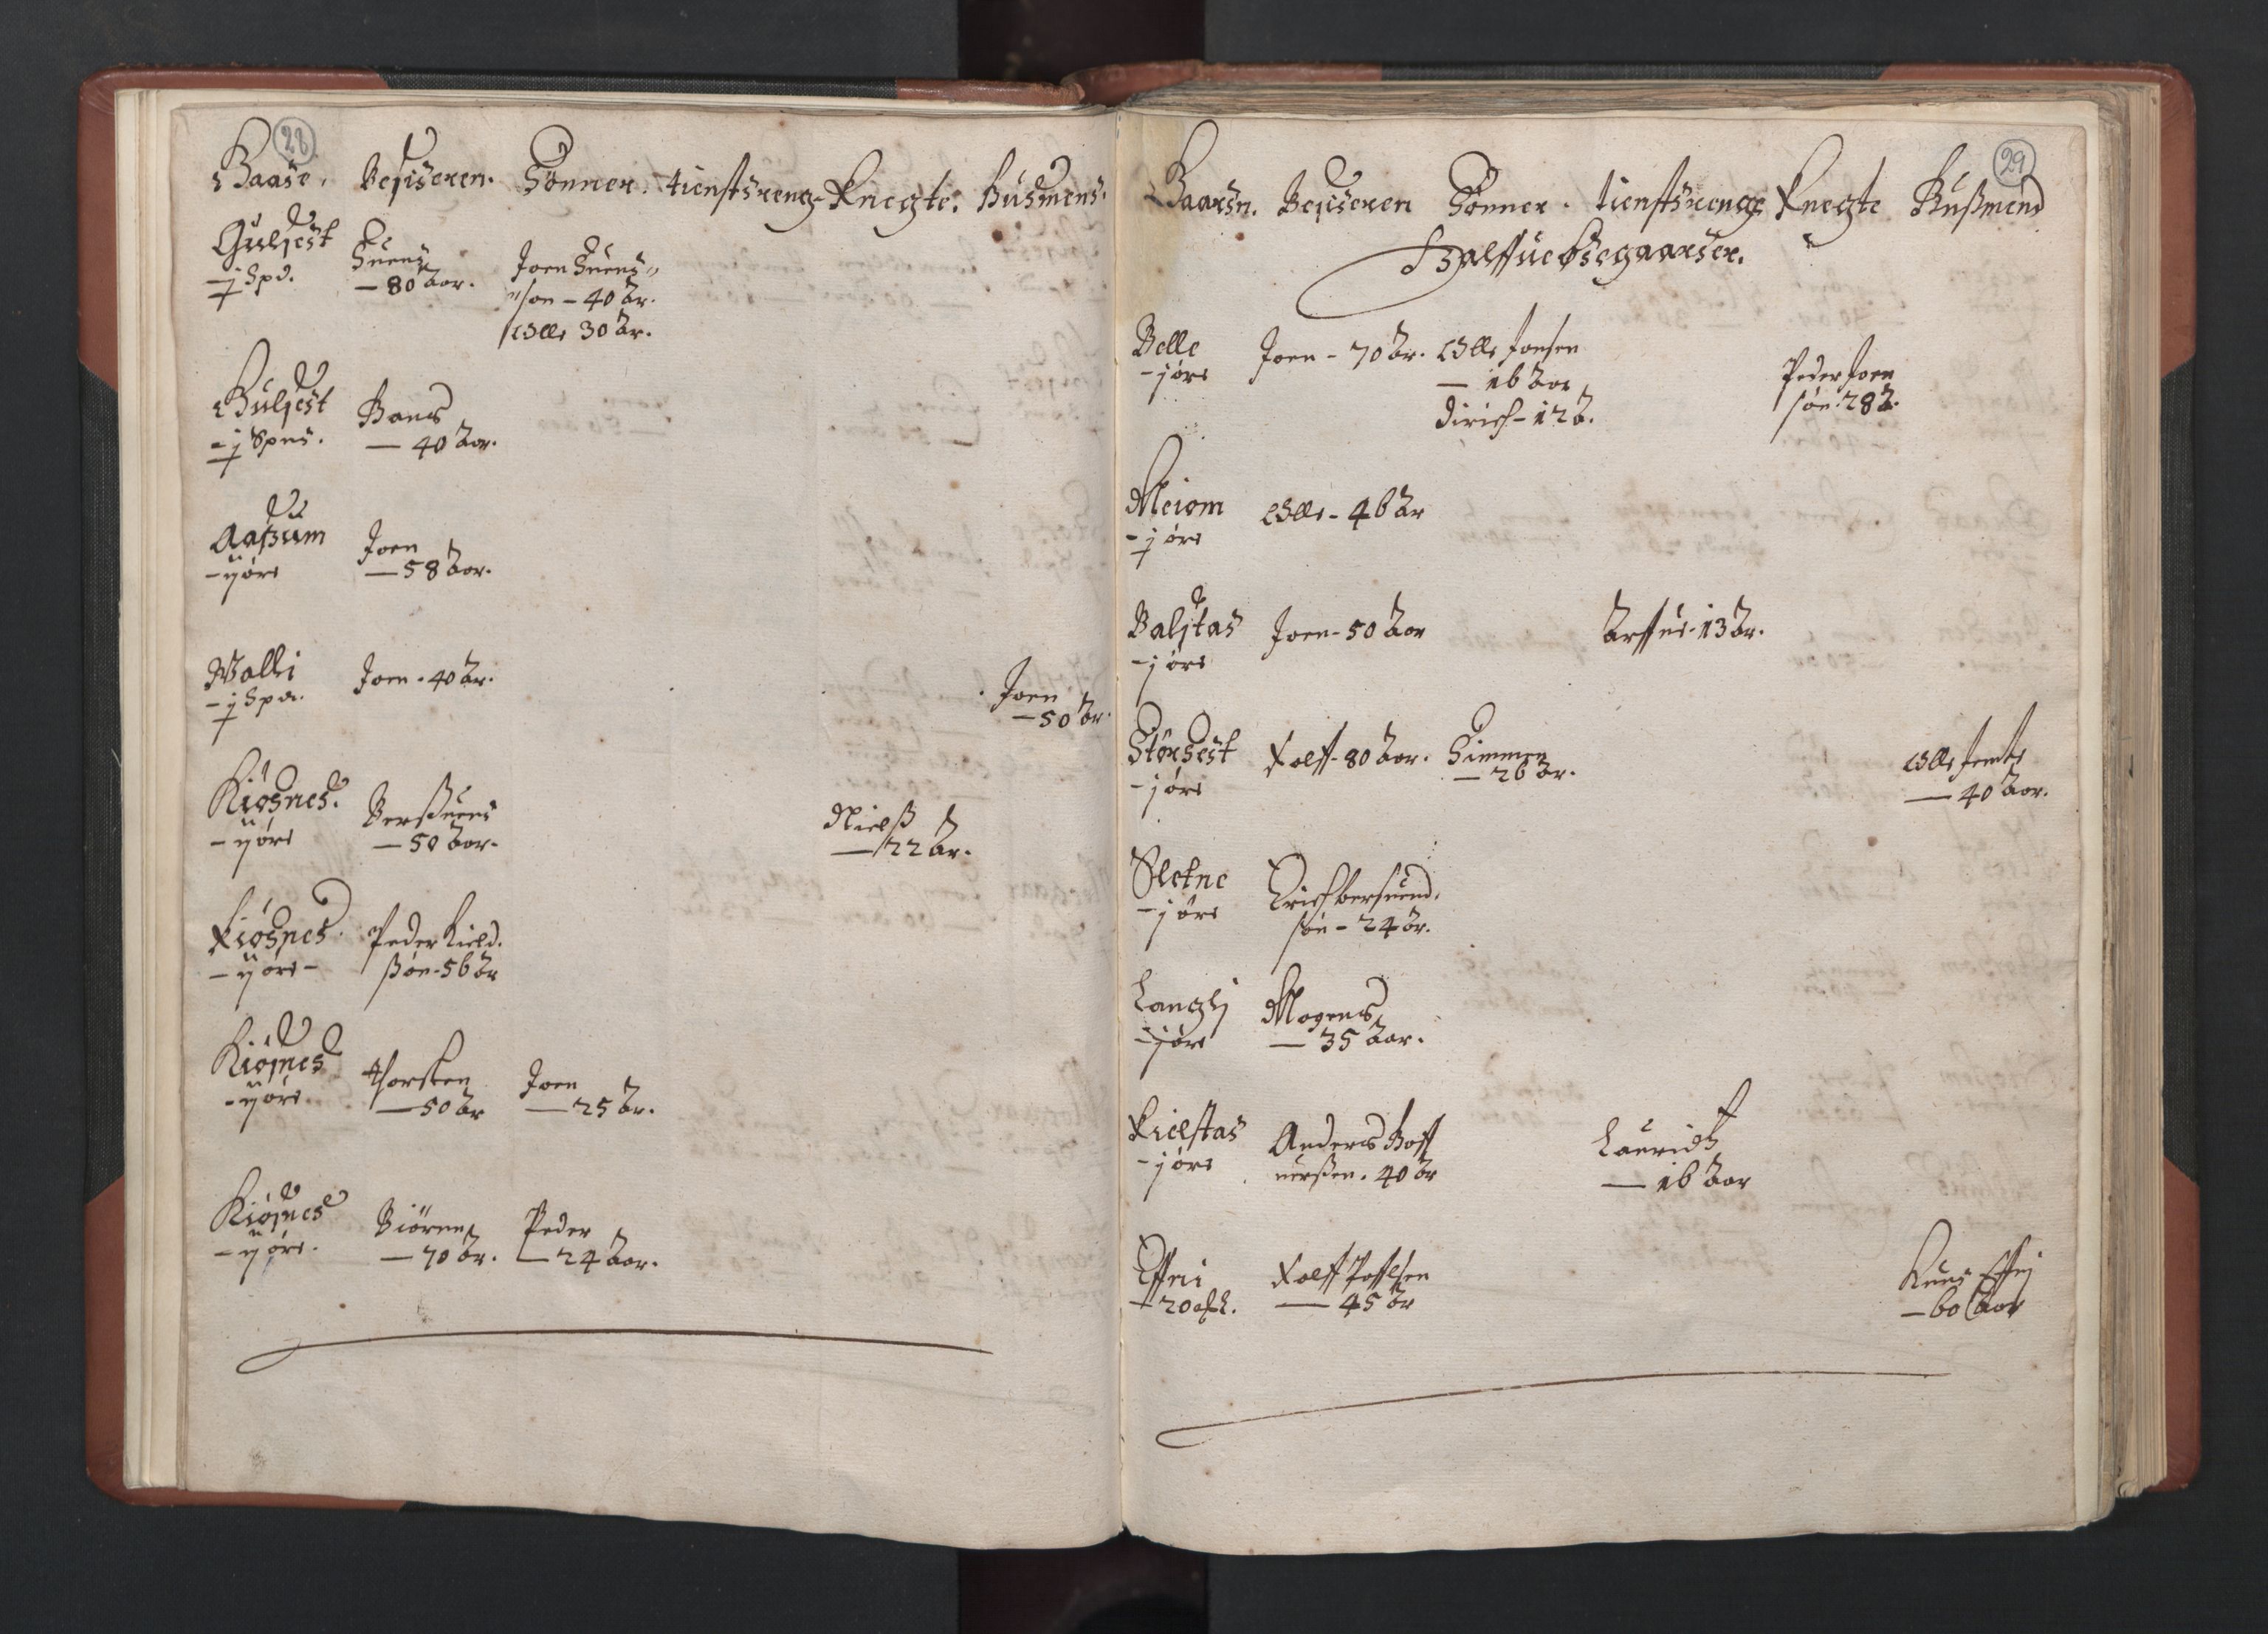 RA, Fogdenes og sorenskrivernes manntall 1664-1666, nr. 19: Fosen fogderi, Inderøy fogderi, Selbu fogderi, Namdal fogderi og Stjørdal fogderi, 1664-1665, s. 28-29